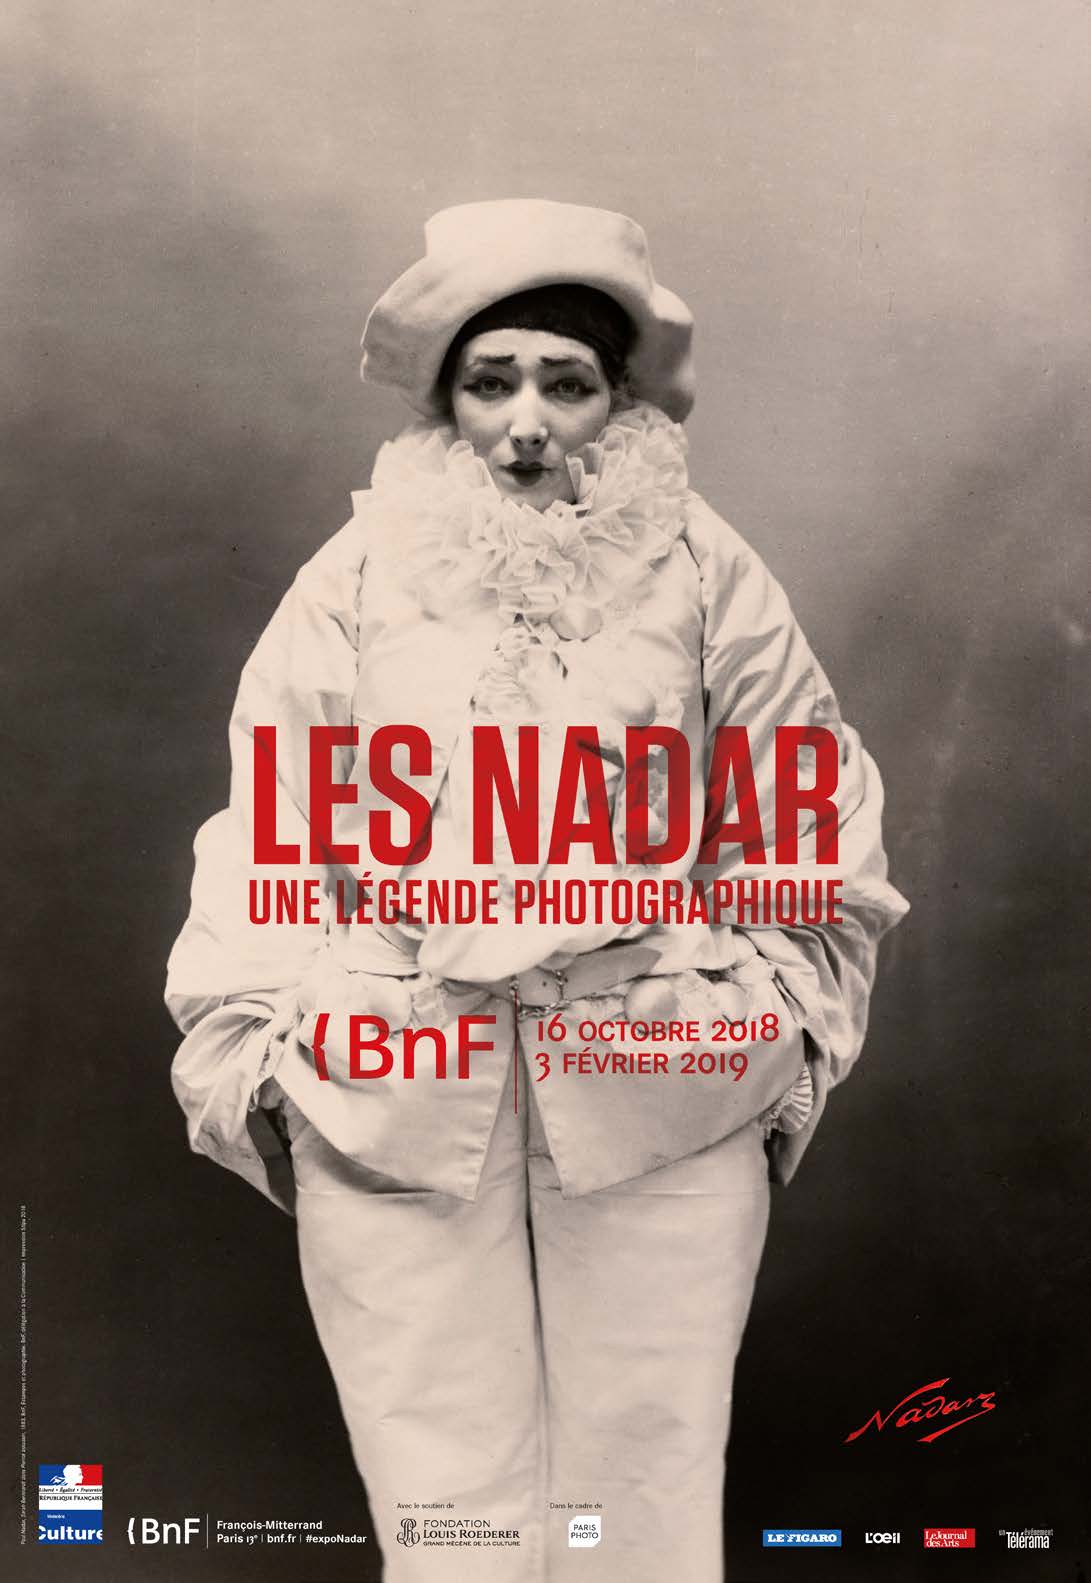 ‘Les Nadar, une légende photographique’ Fond : Sarah Bernhardt en Pierrot assassin, Atelier Nadar